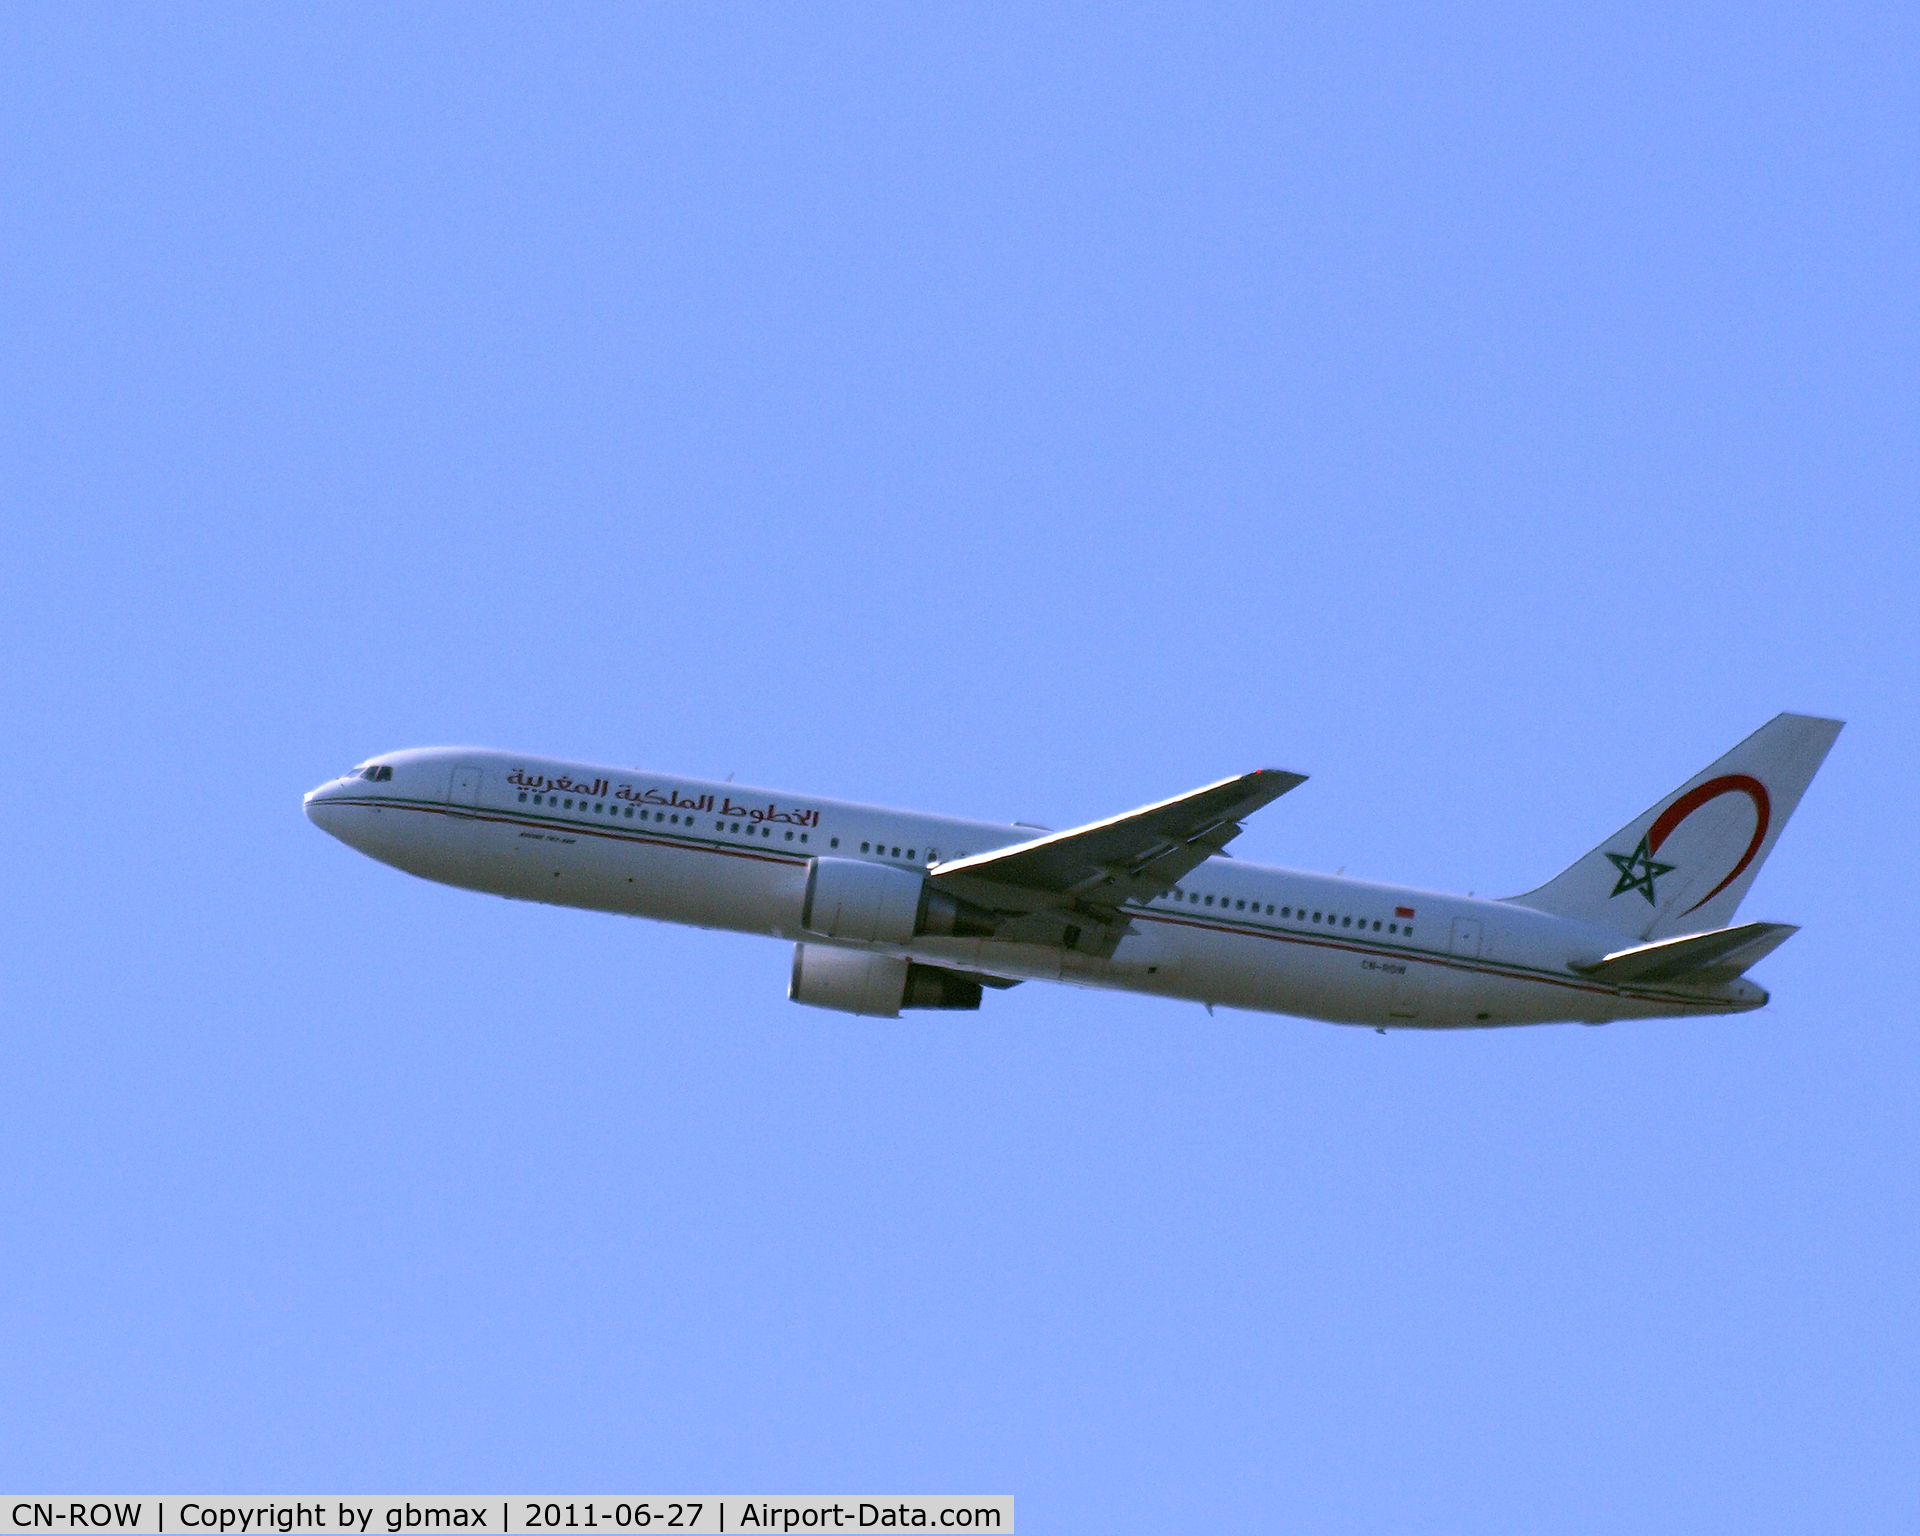 CN-ROW, 1999 Boeing 767-343/ER C/N 30008, Flying @ ~3,500 feet high, going to a landing at JFK